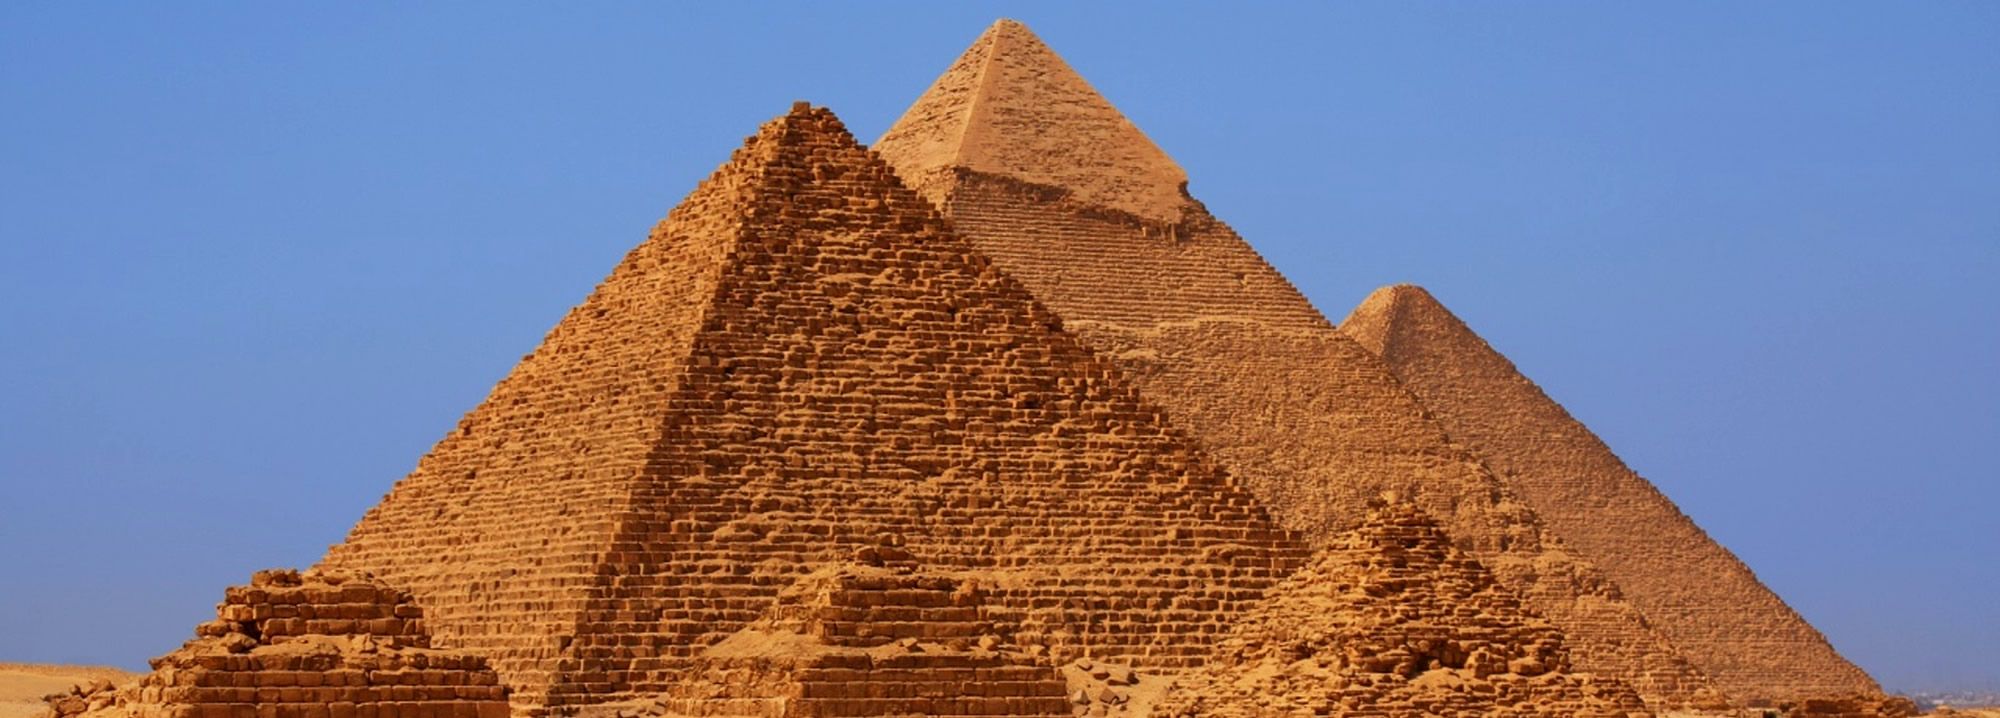 Construtores das pirâmides do Egito, algumas descobertas